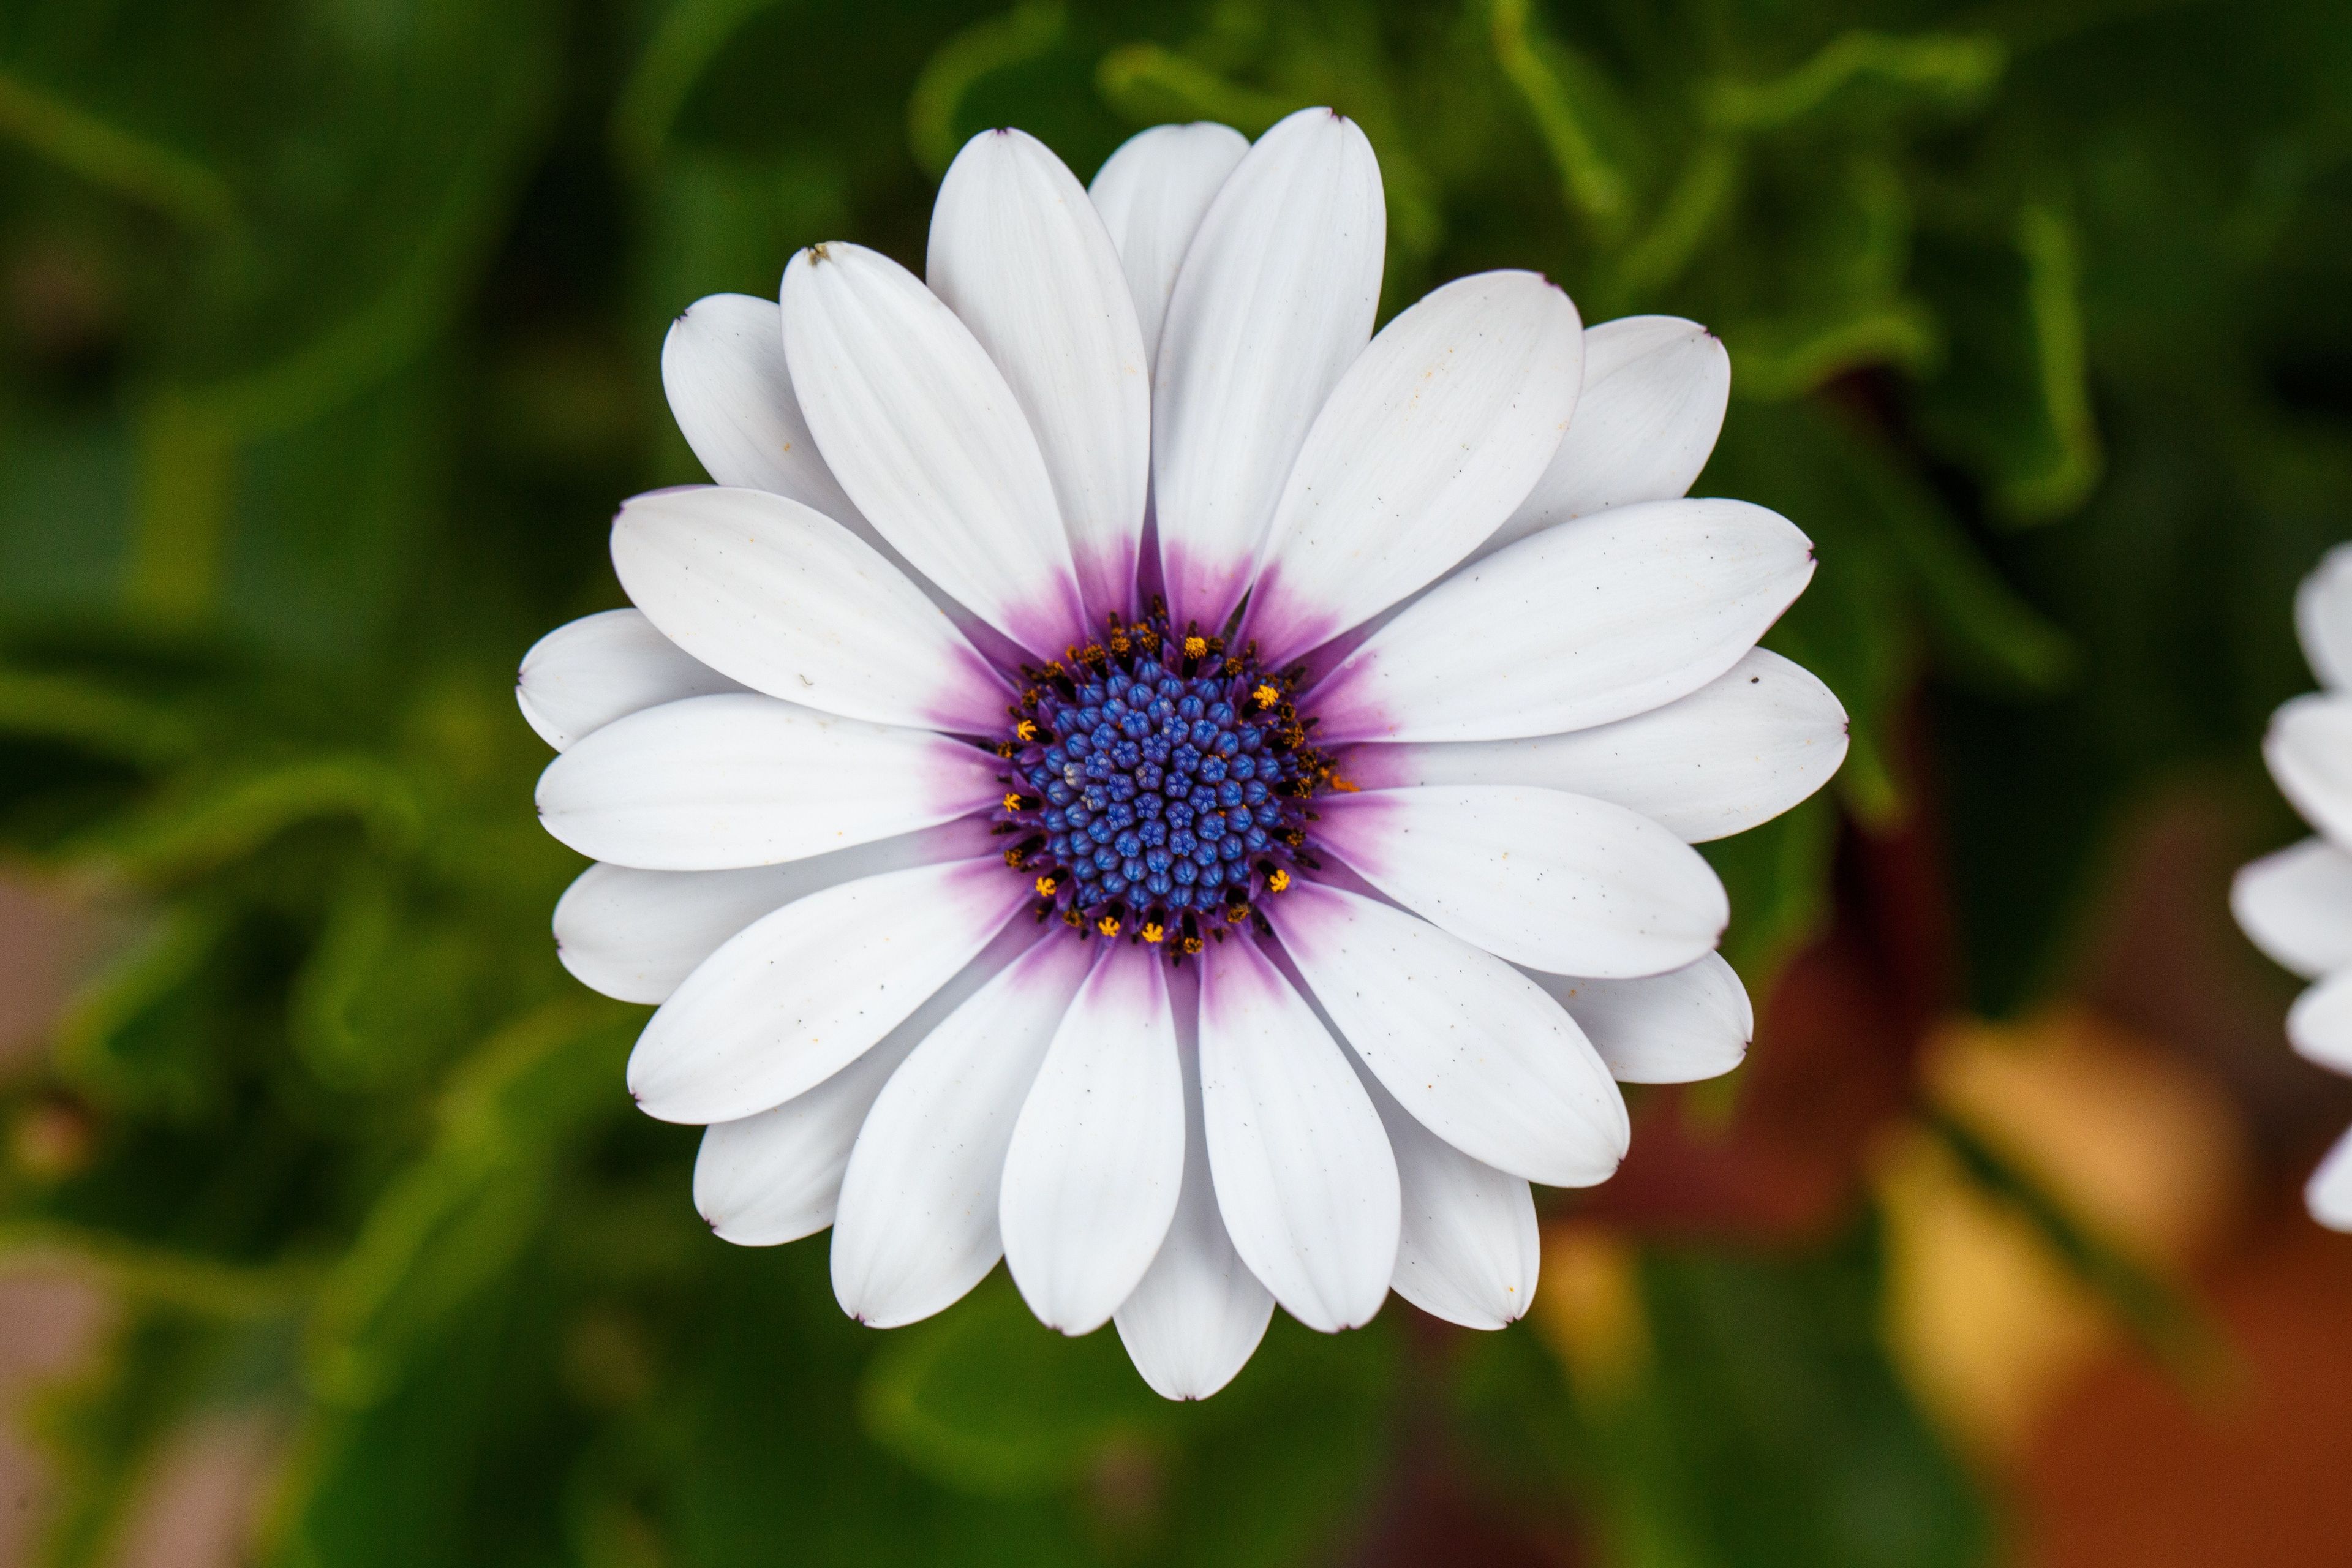 A white Cape daisy, also known as osteospermum.